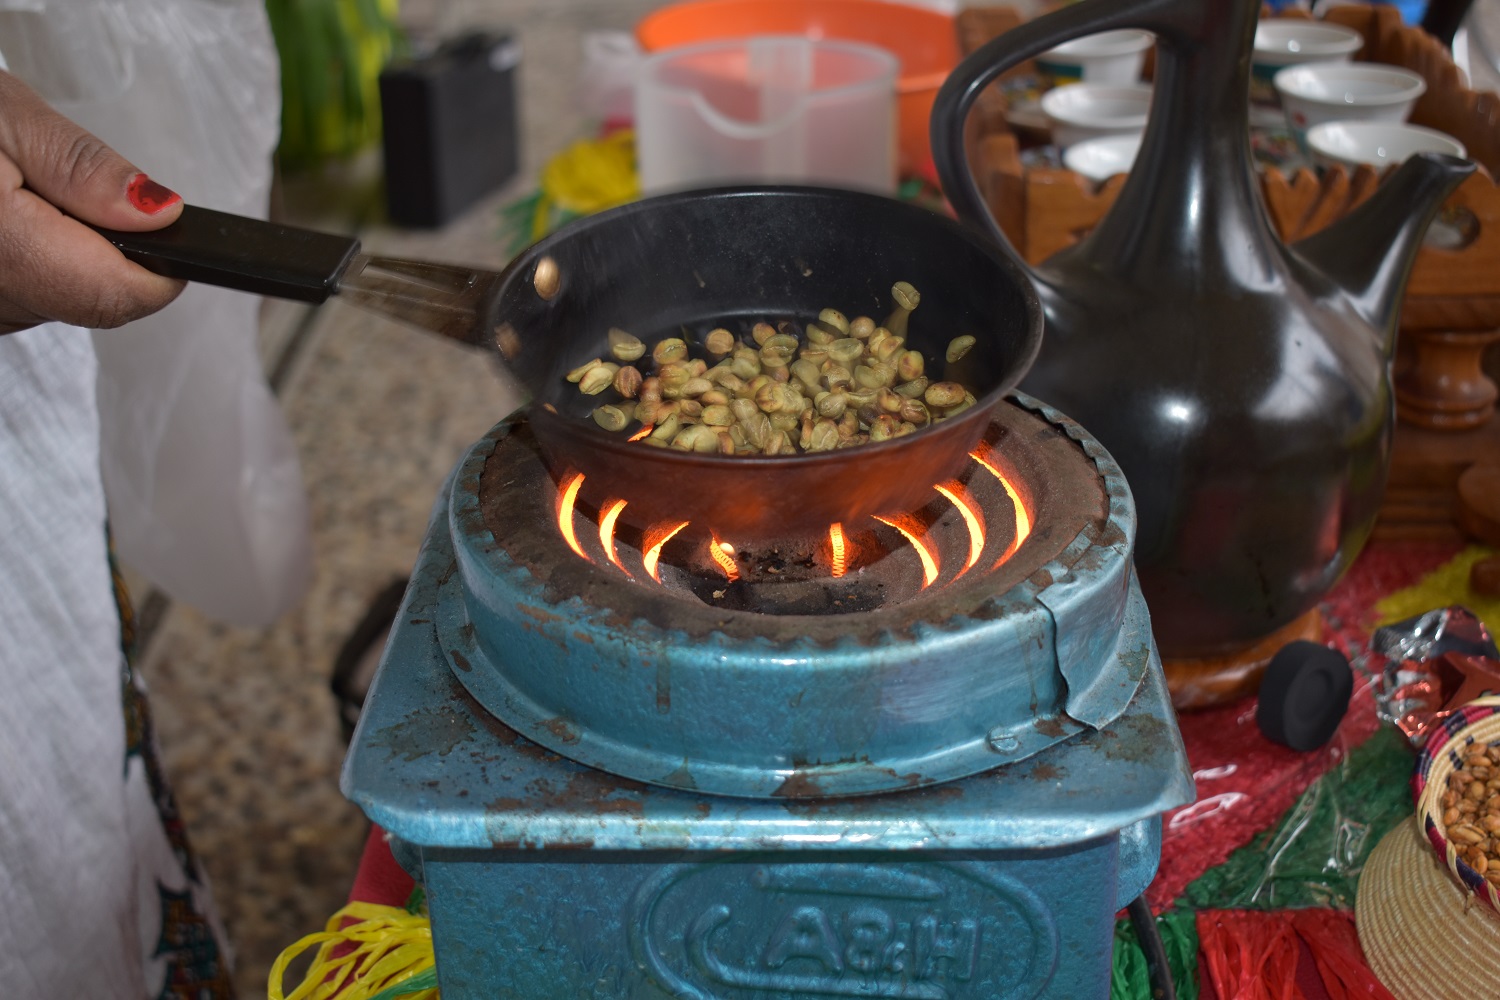 Groene koffiebonen worden gebrand in een pan op een houtskoolbrander. Collectie CAG.